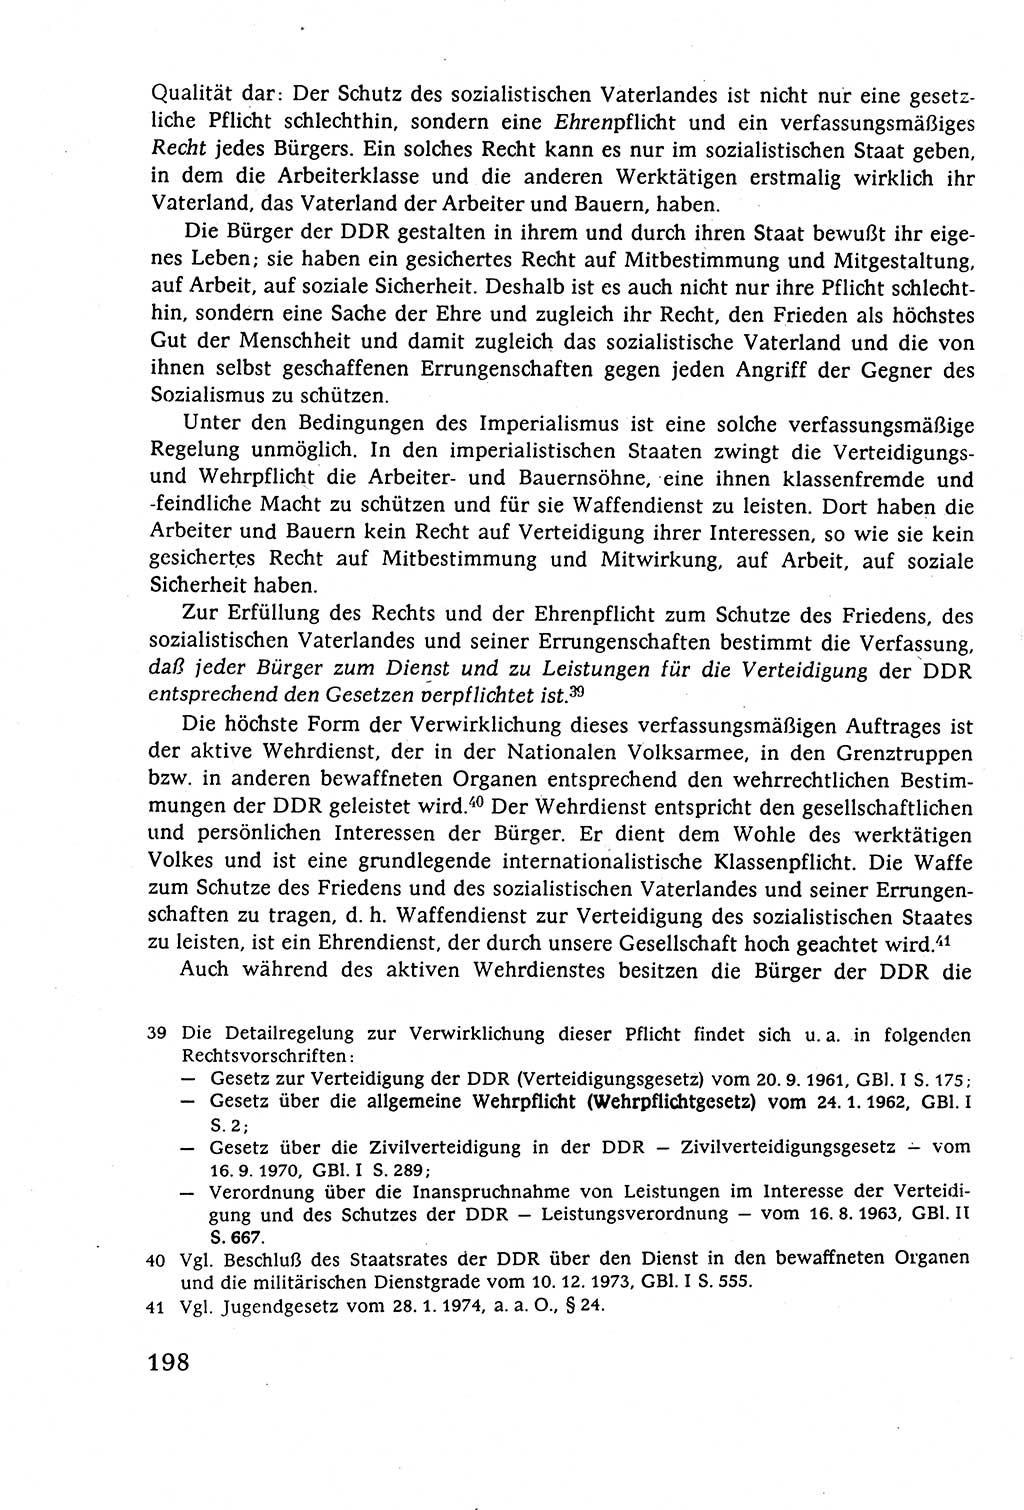 Staatsrecht der DDR (Deutsche Demokratische Republik), Lehrbuch 1977, Seite 198 (St.-R. DDR Lb. 1977, S. 198)